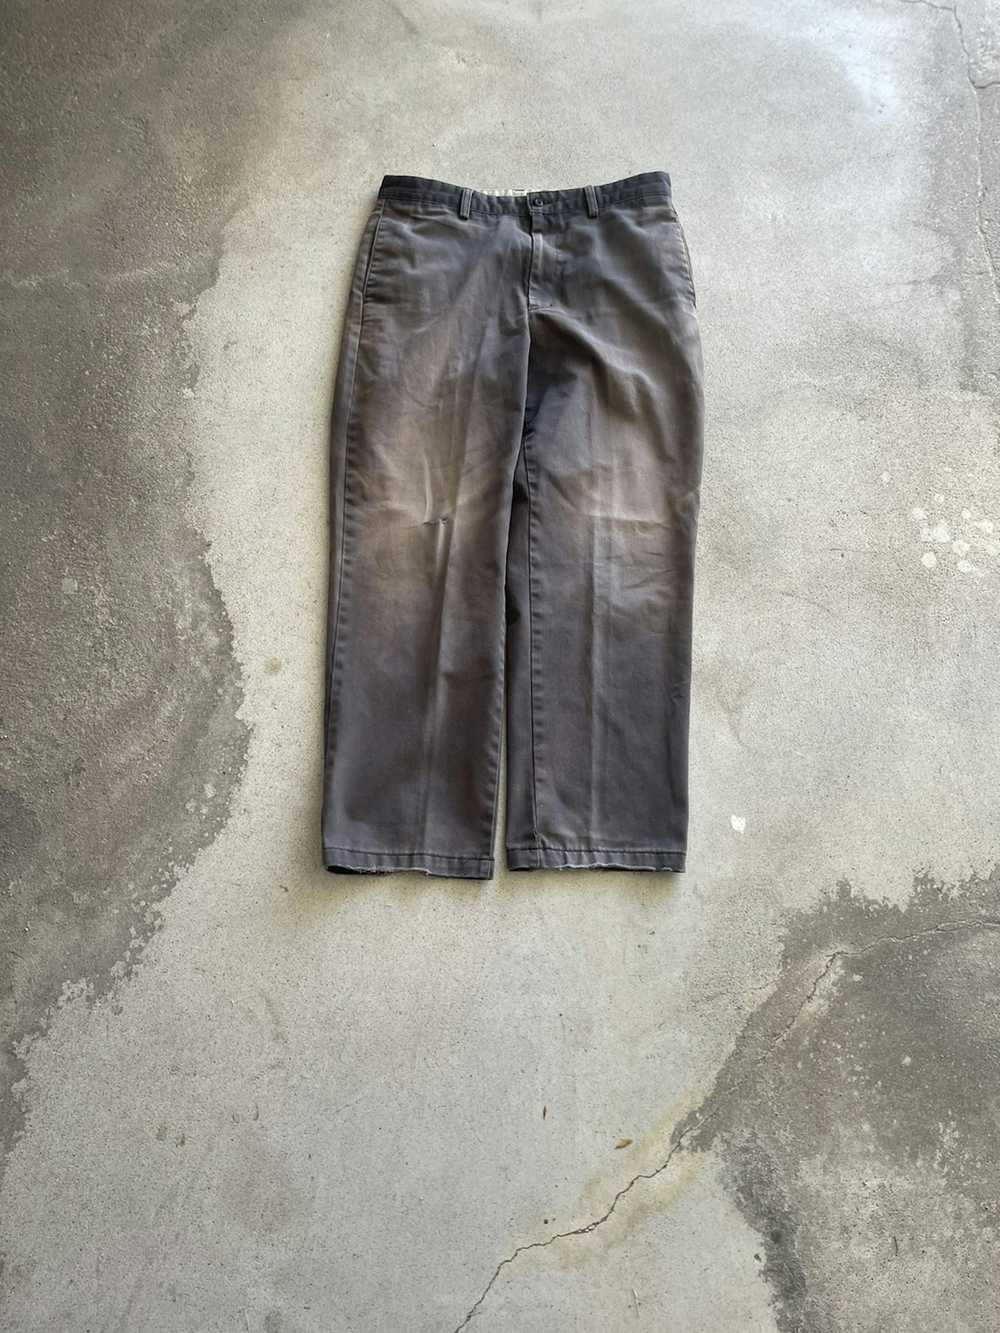 Vintage Vintage Sun Faded Khaki pants (34x29) - image 1